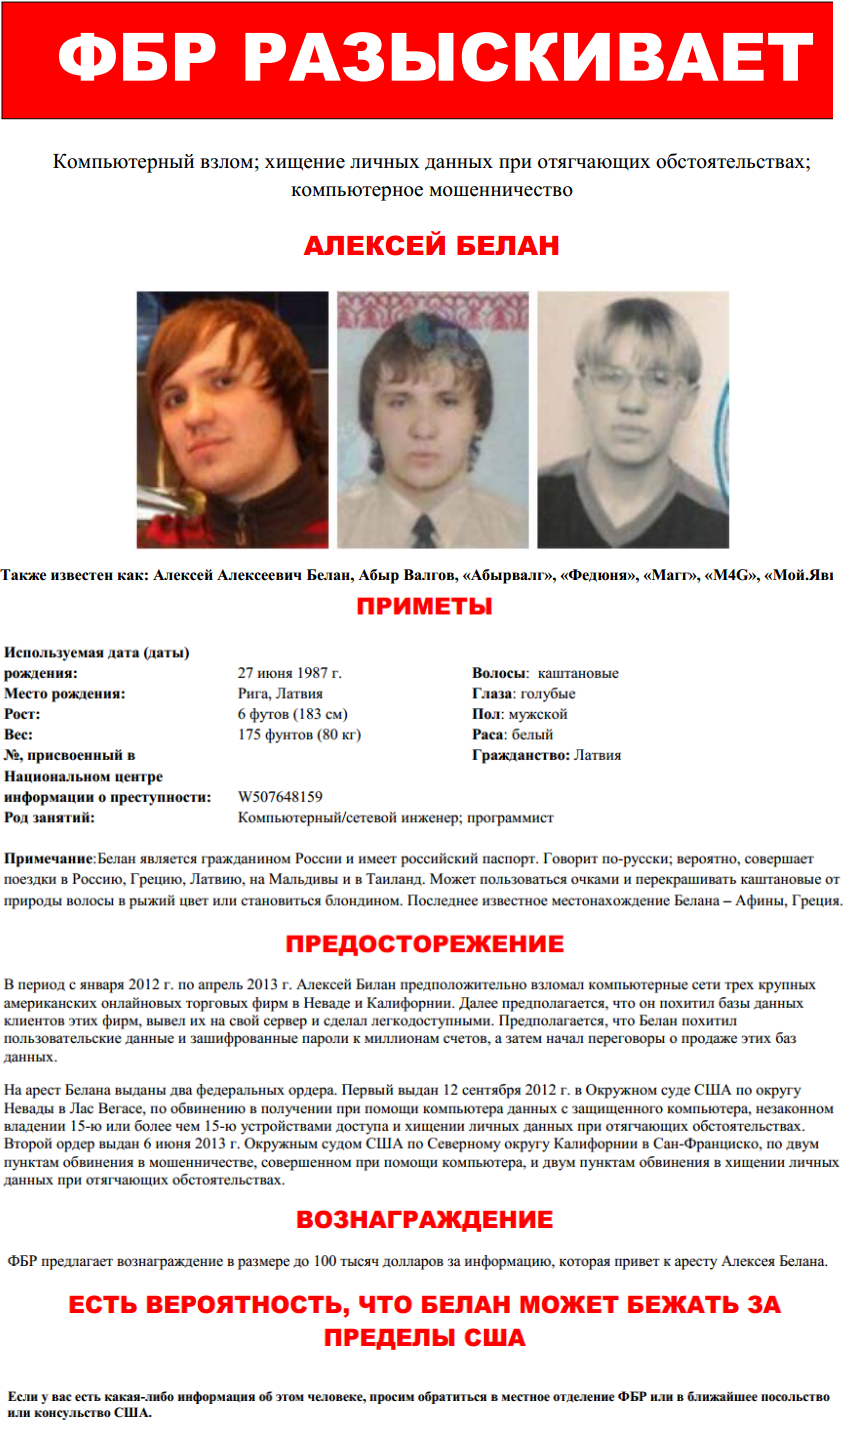 Wanted Russian Hacker